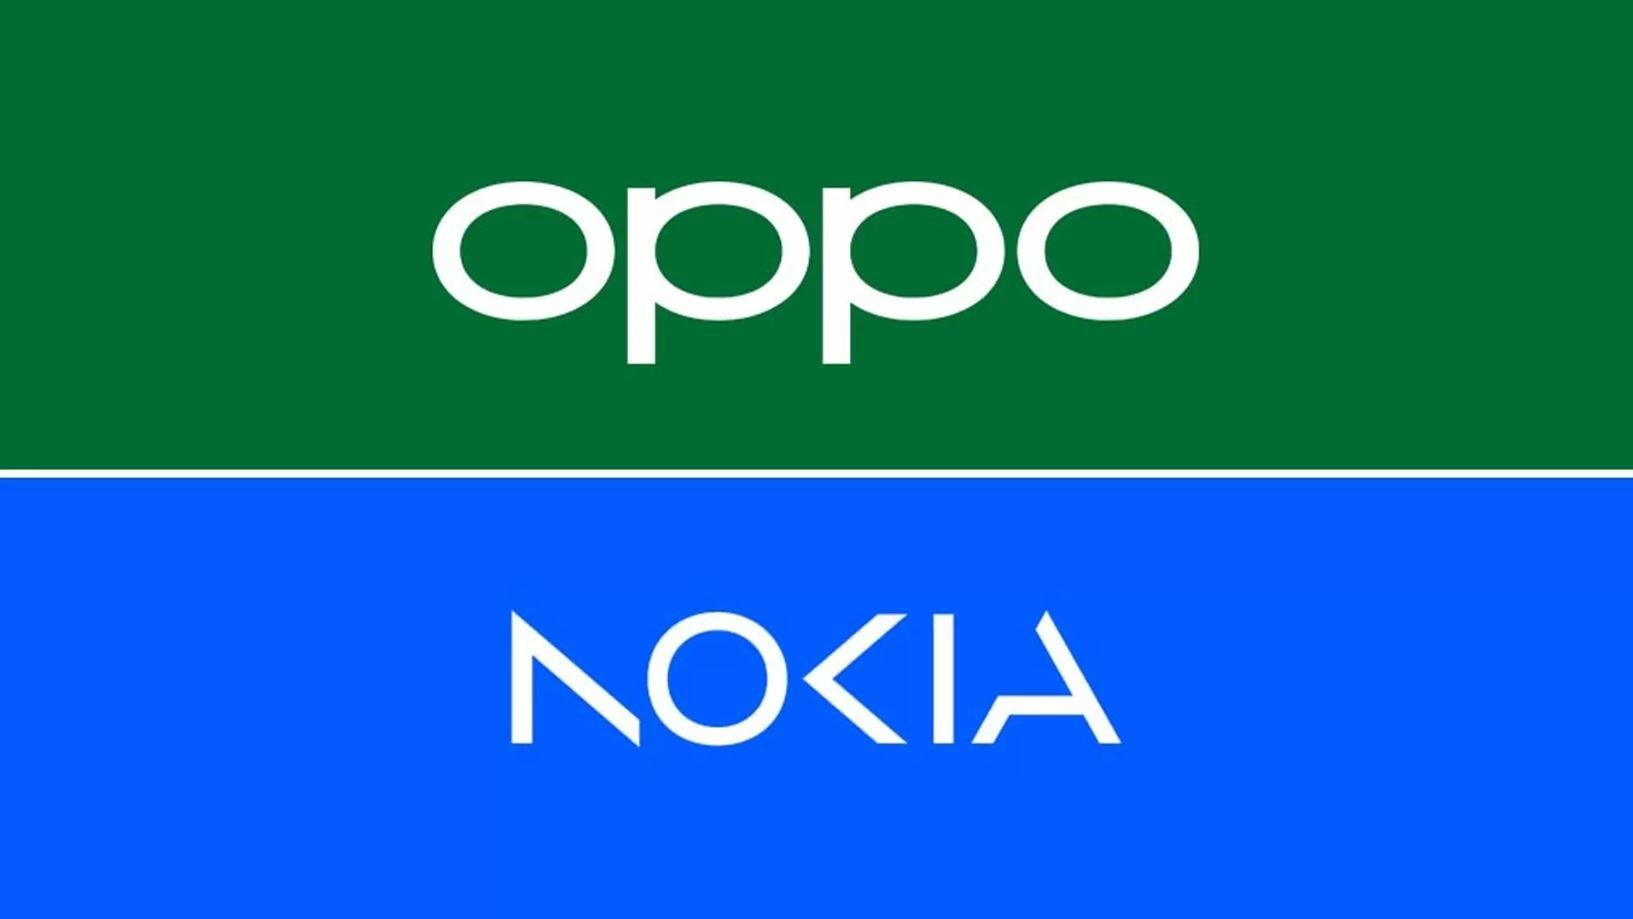 Nokia ve Oppo anlaşmazlığı sona erdi: 5G patentleri için lisans anlaşması imzaladılar